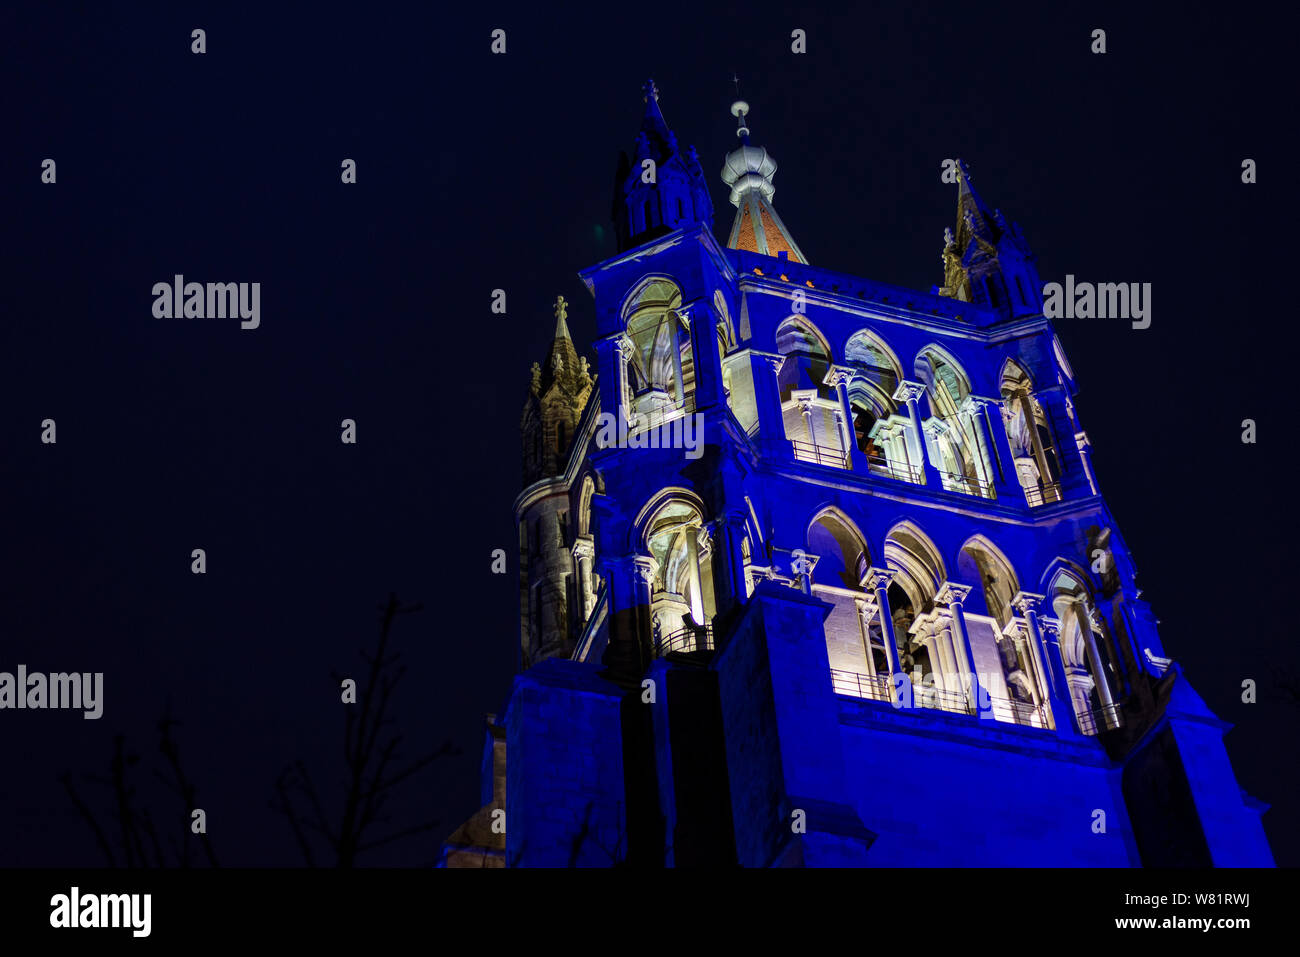 Nacht beleuchtet niedrigen Winkel Blick auf die Spitze der Glockenturm der  Kathedrale von Lausanne, La Cathédrale de Lausanne, Lausanne, Schweiz  Stockfotografie - Alamy